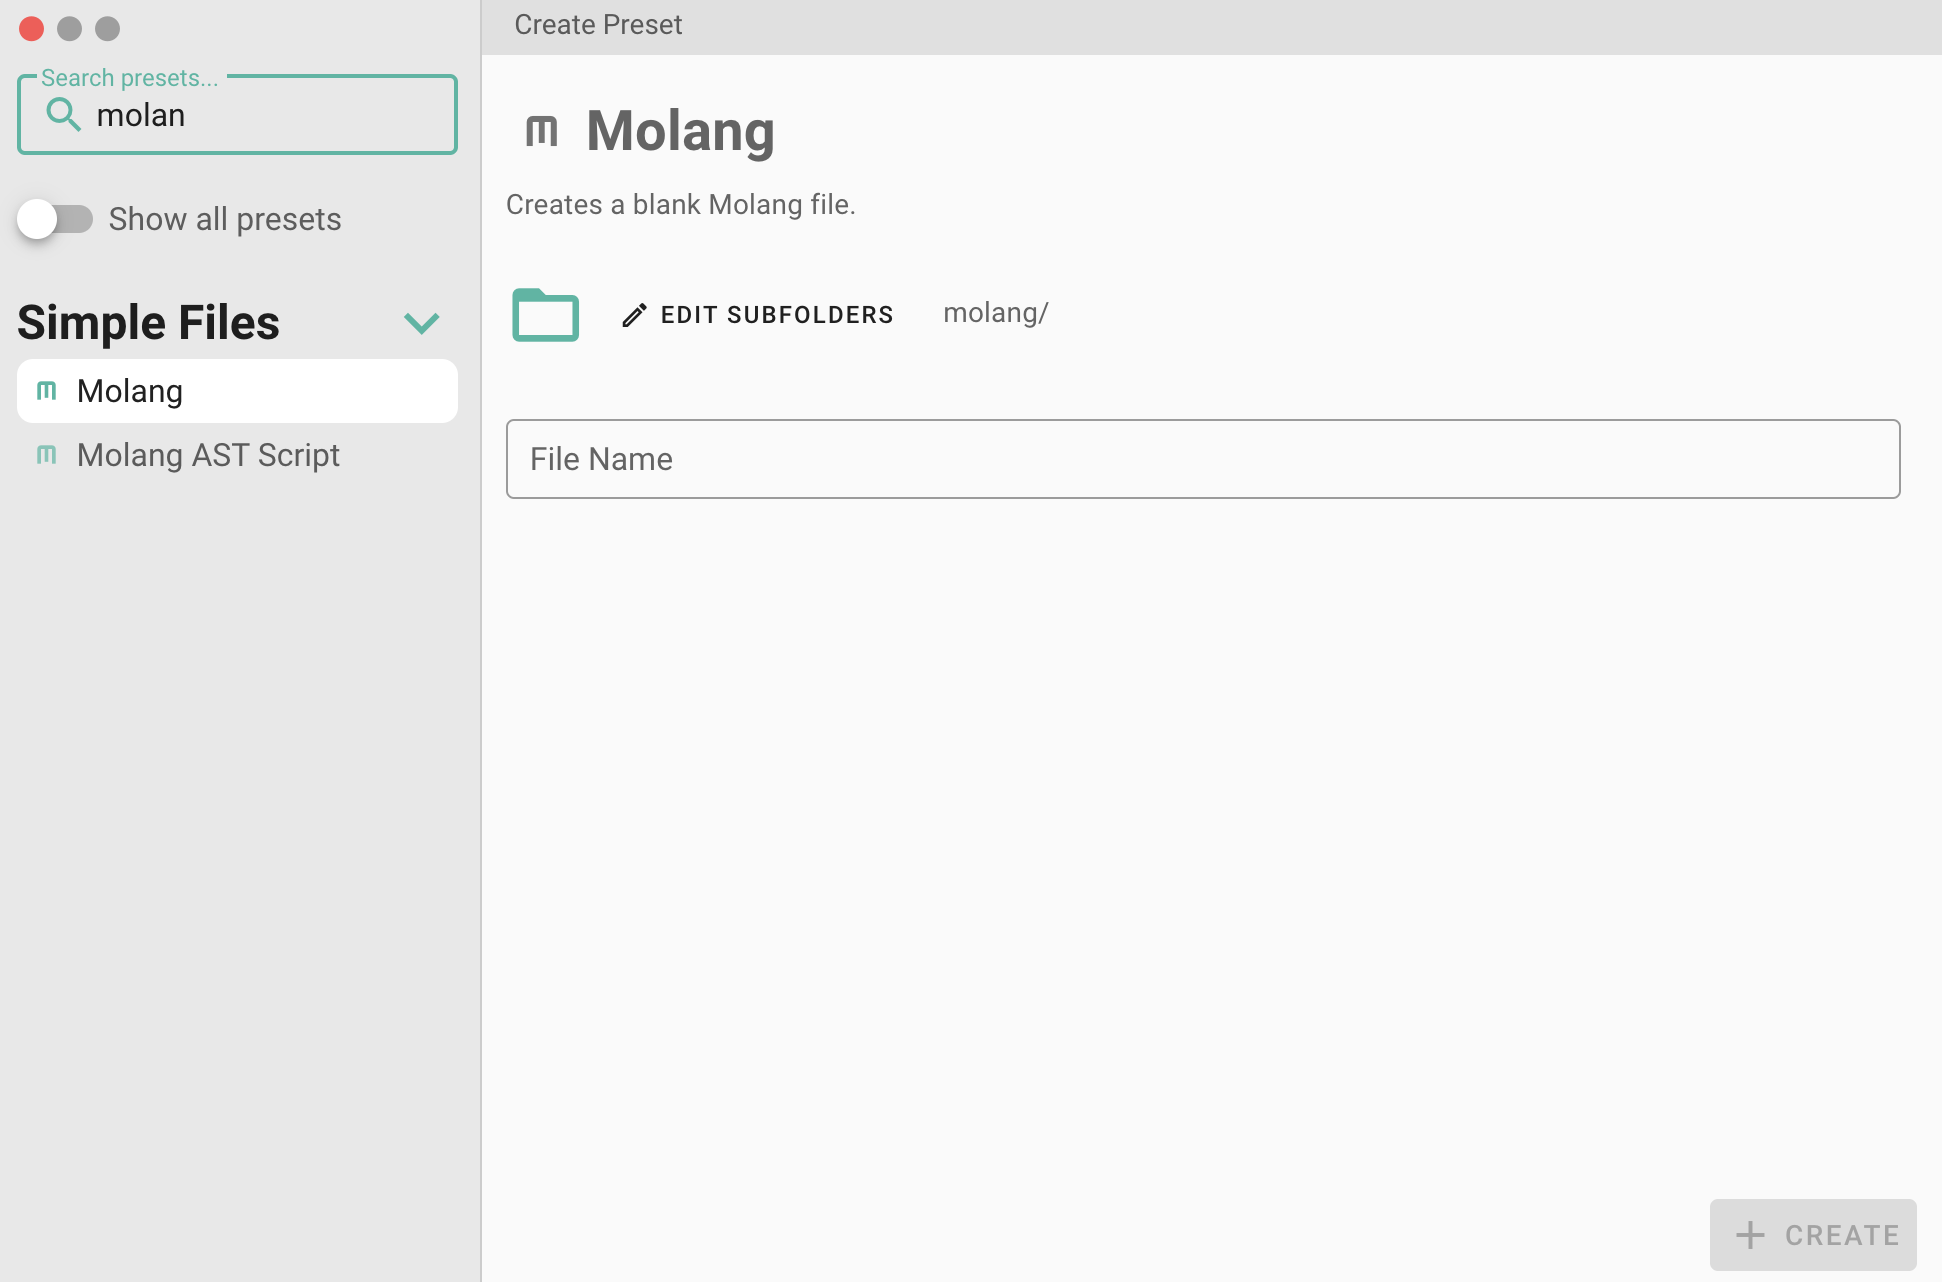 Creating a molang file